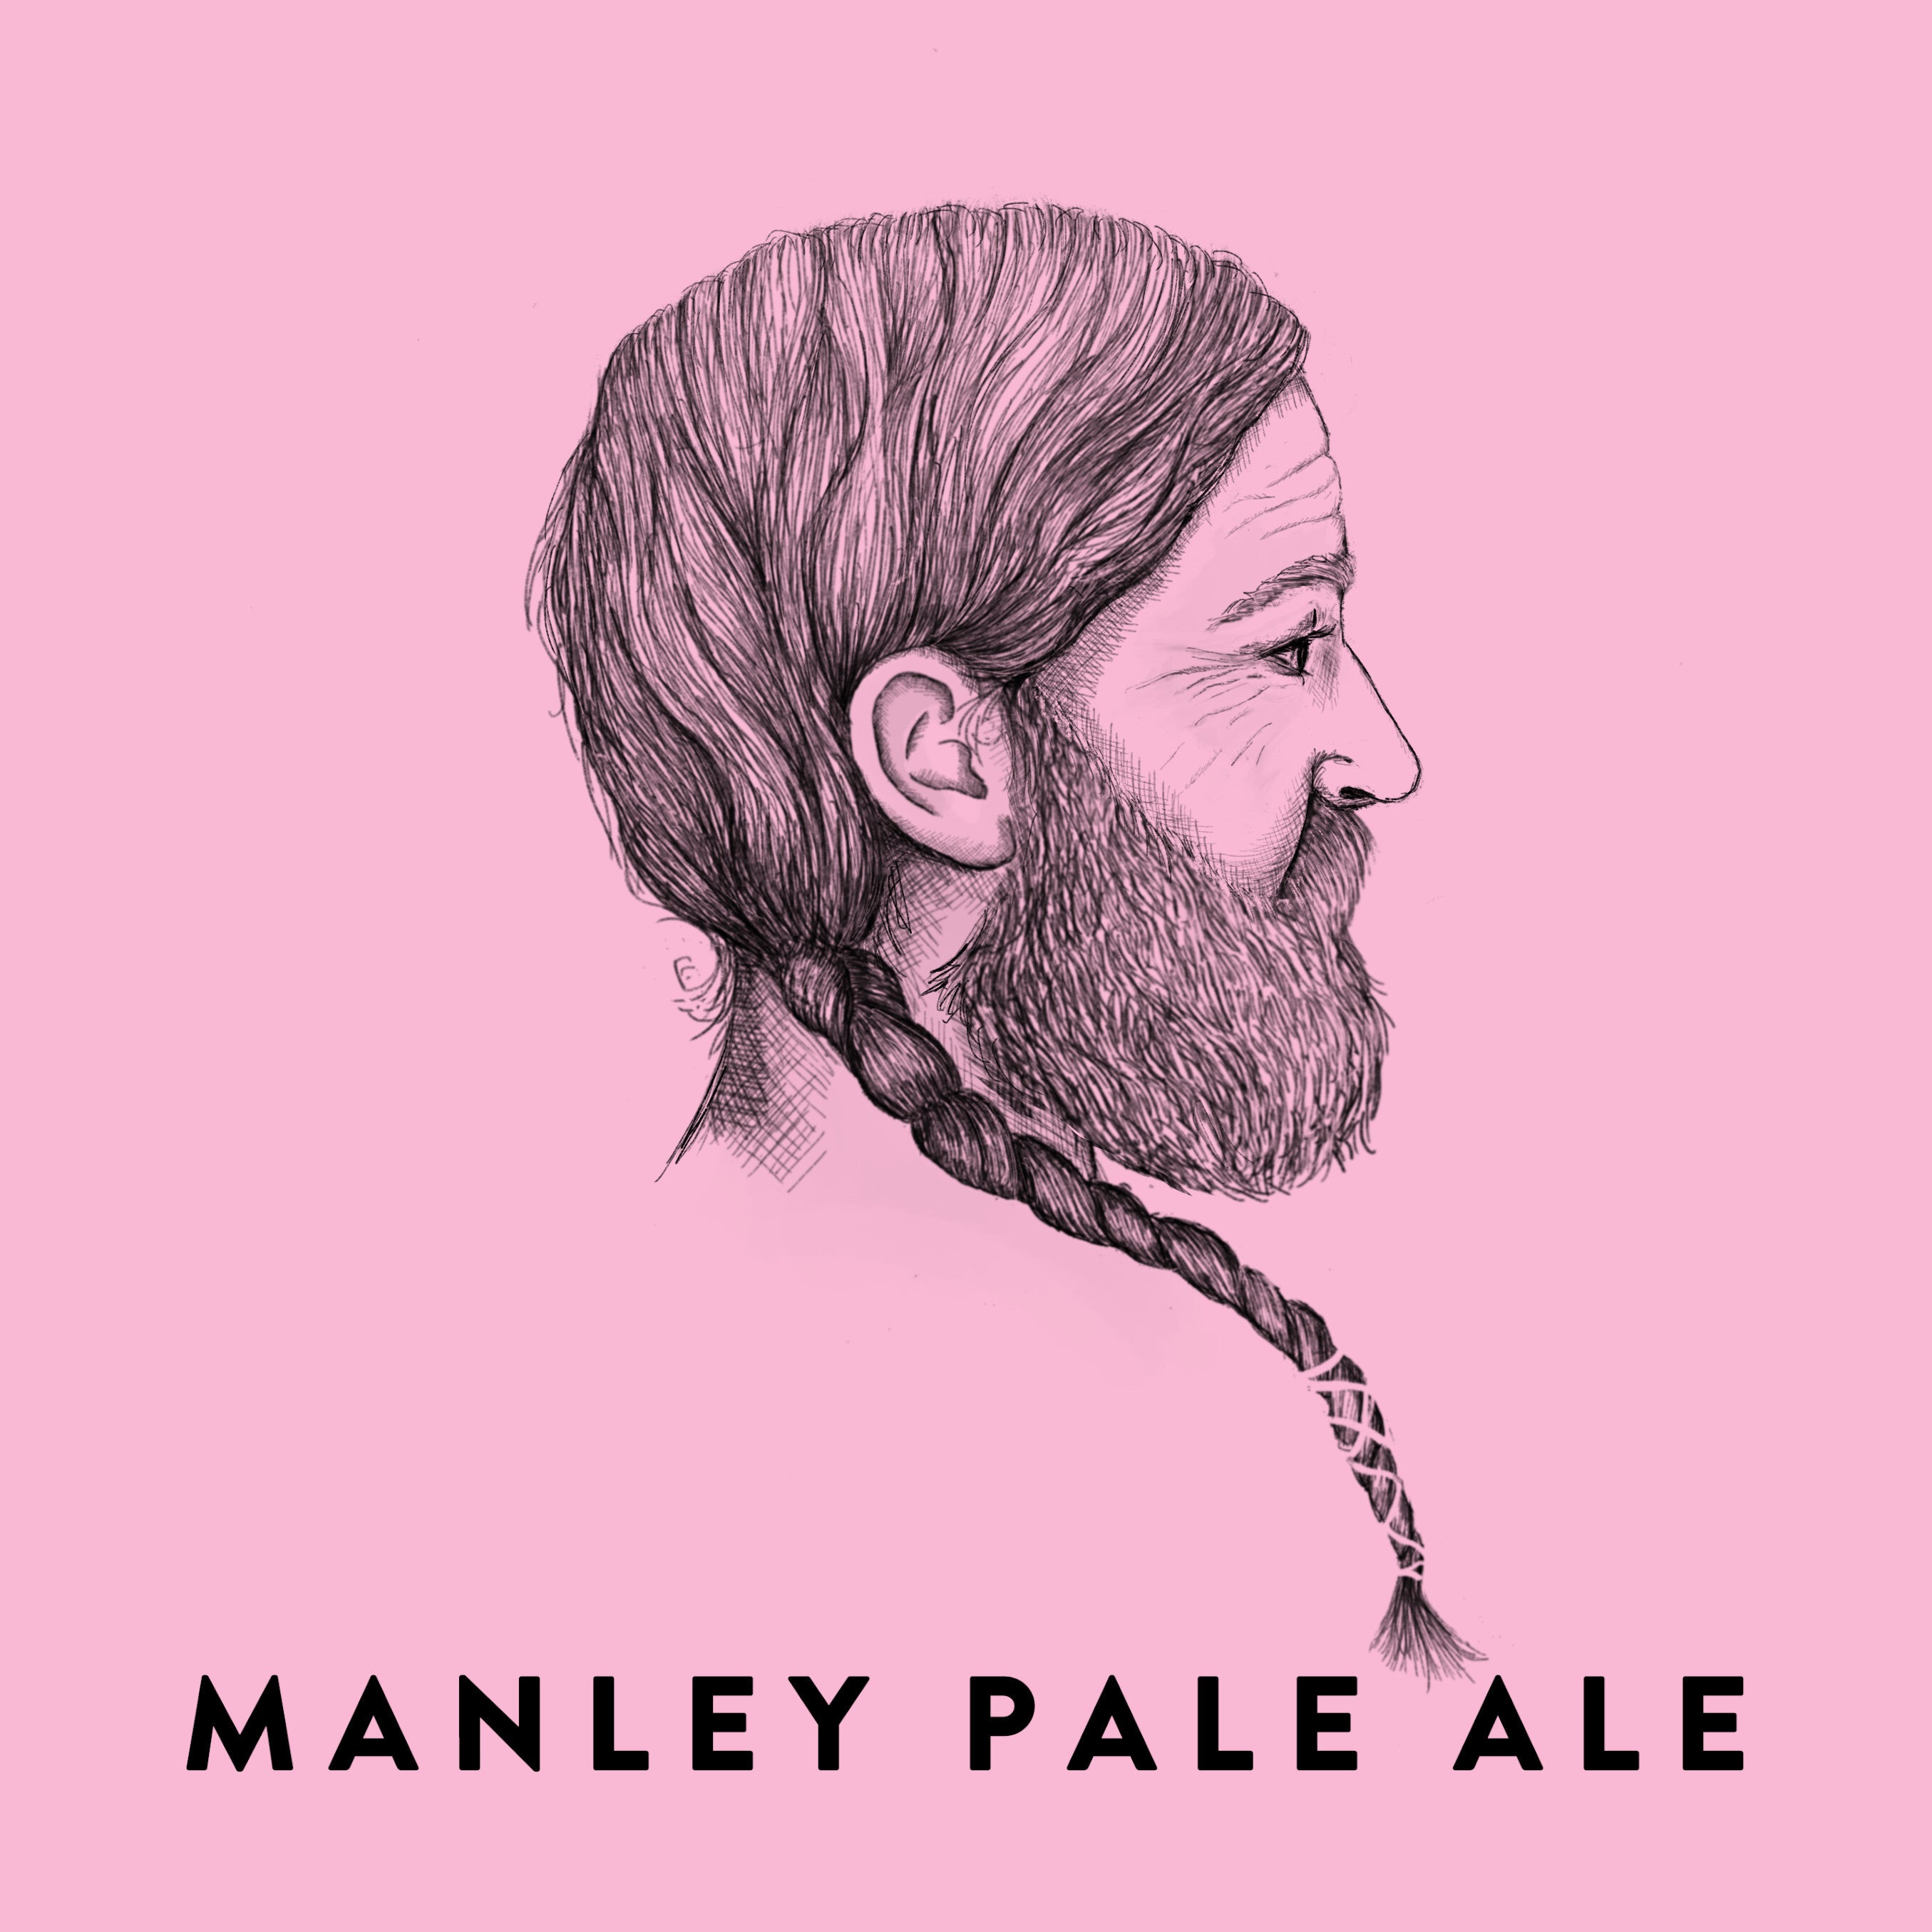 Manley Pale Ale